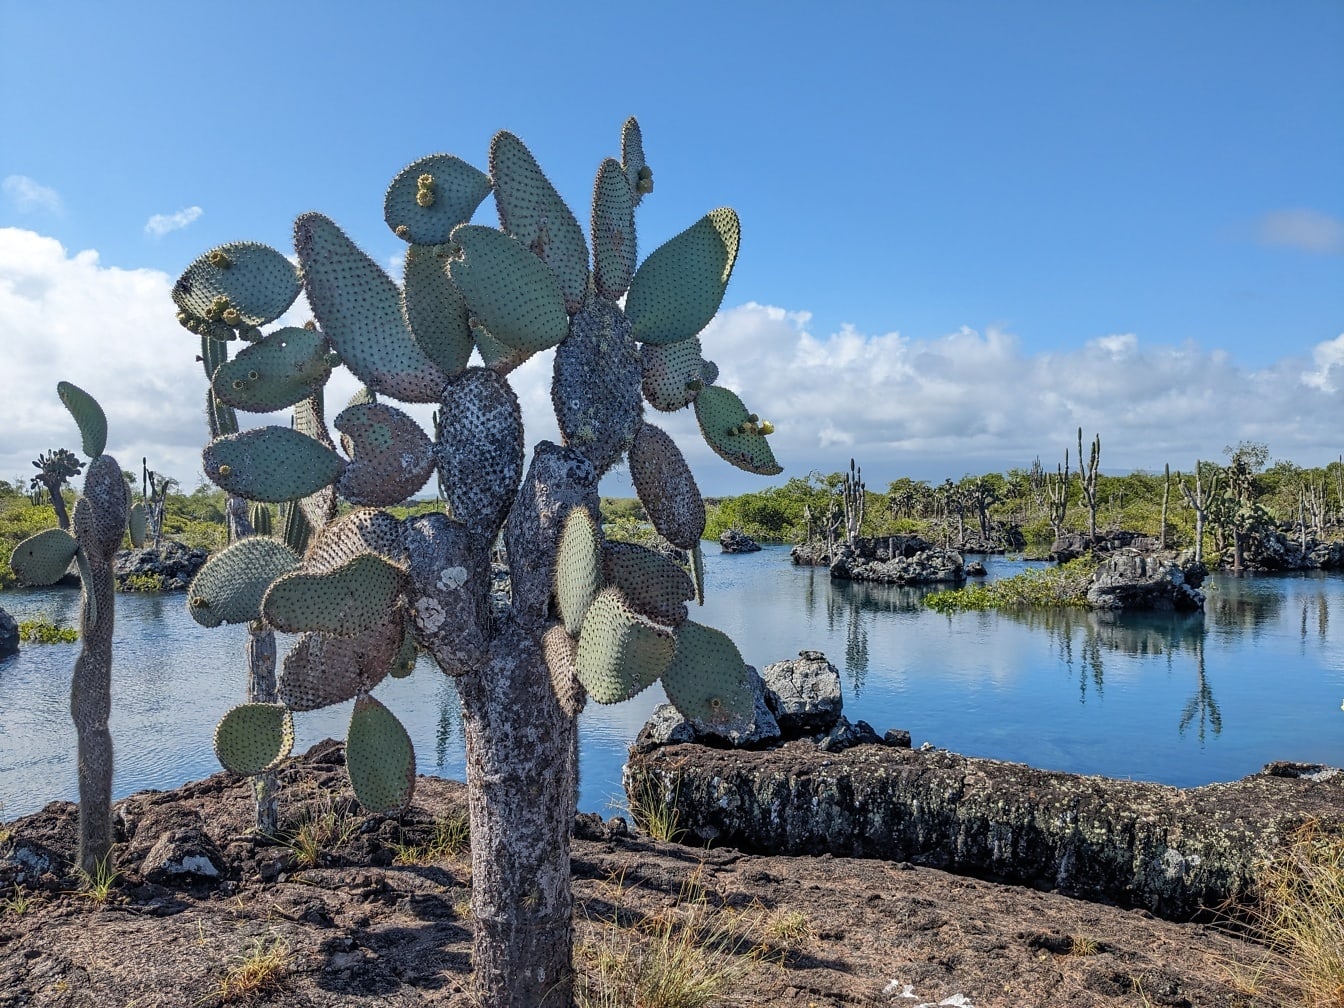 A fügekaktusz, a Galápagos-szigeteken endemikus kaktuszfaj (Opuntia galapageia)